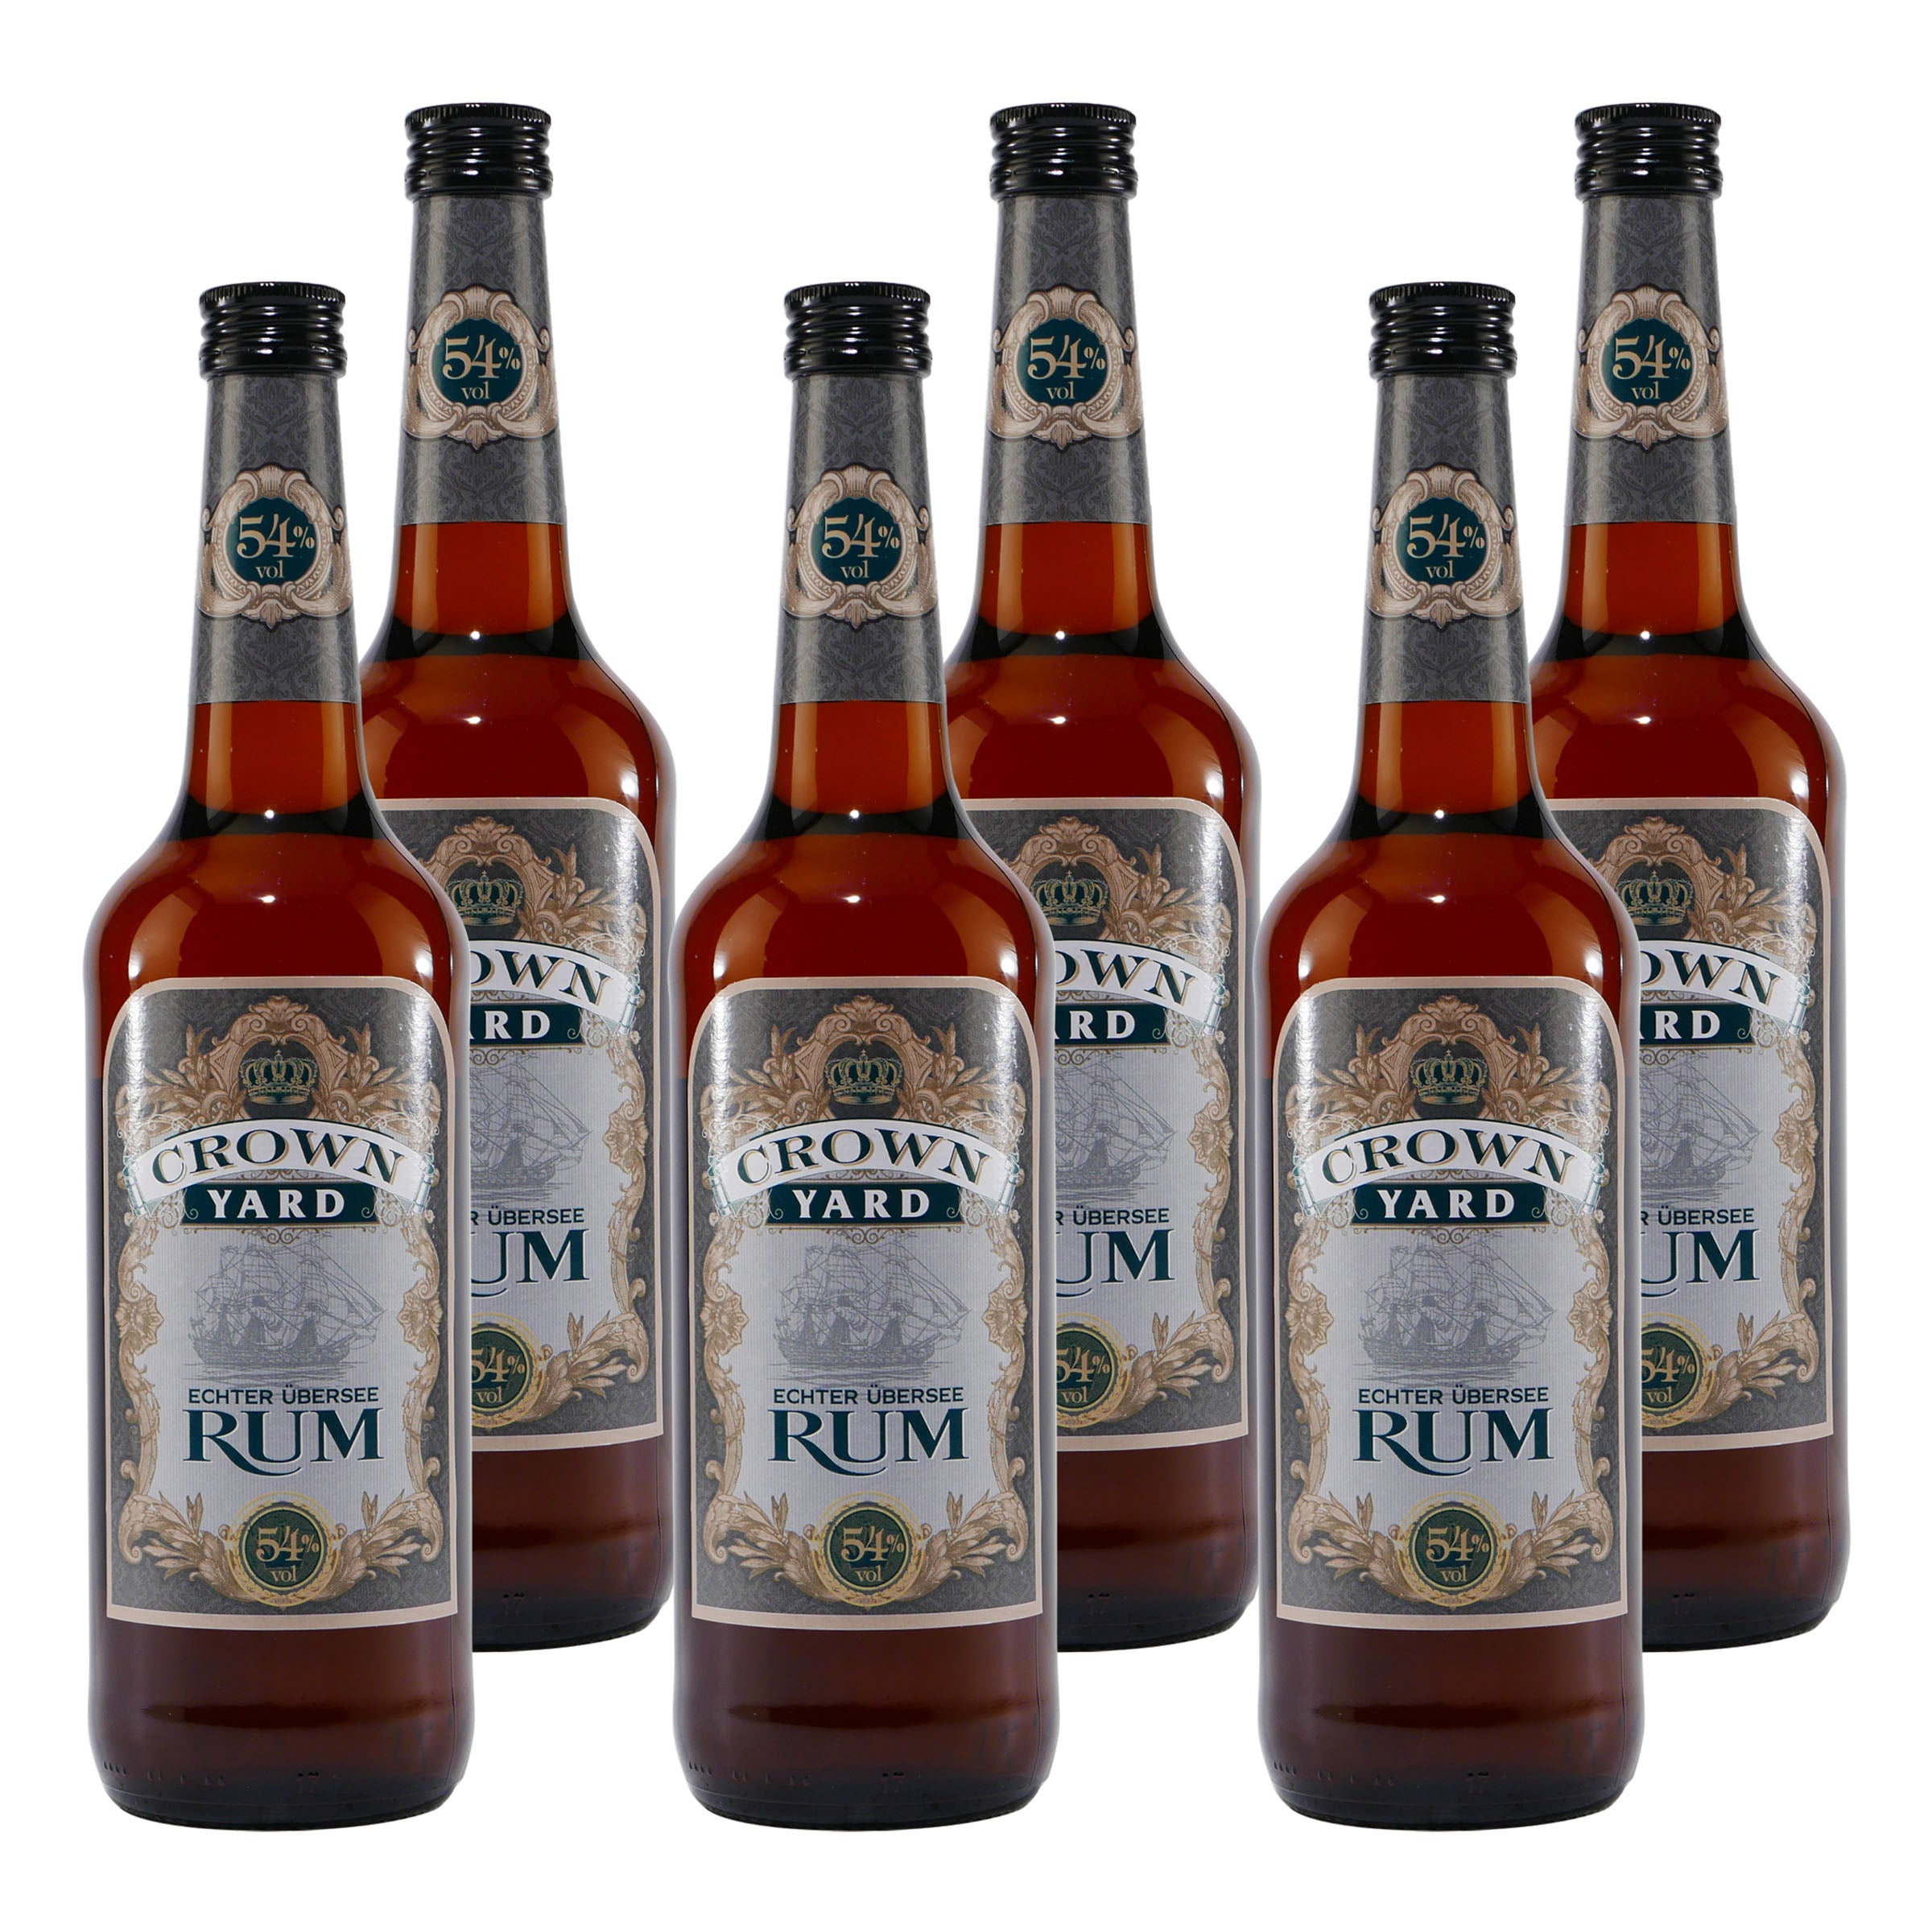 Crown Yard Übersee Rum 54% Vol. (6 x 0,7L)